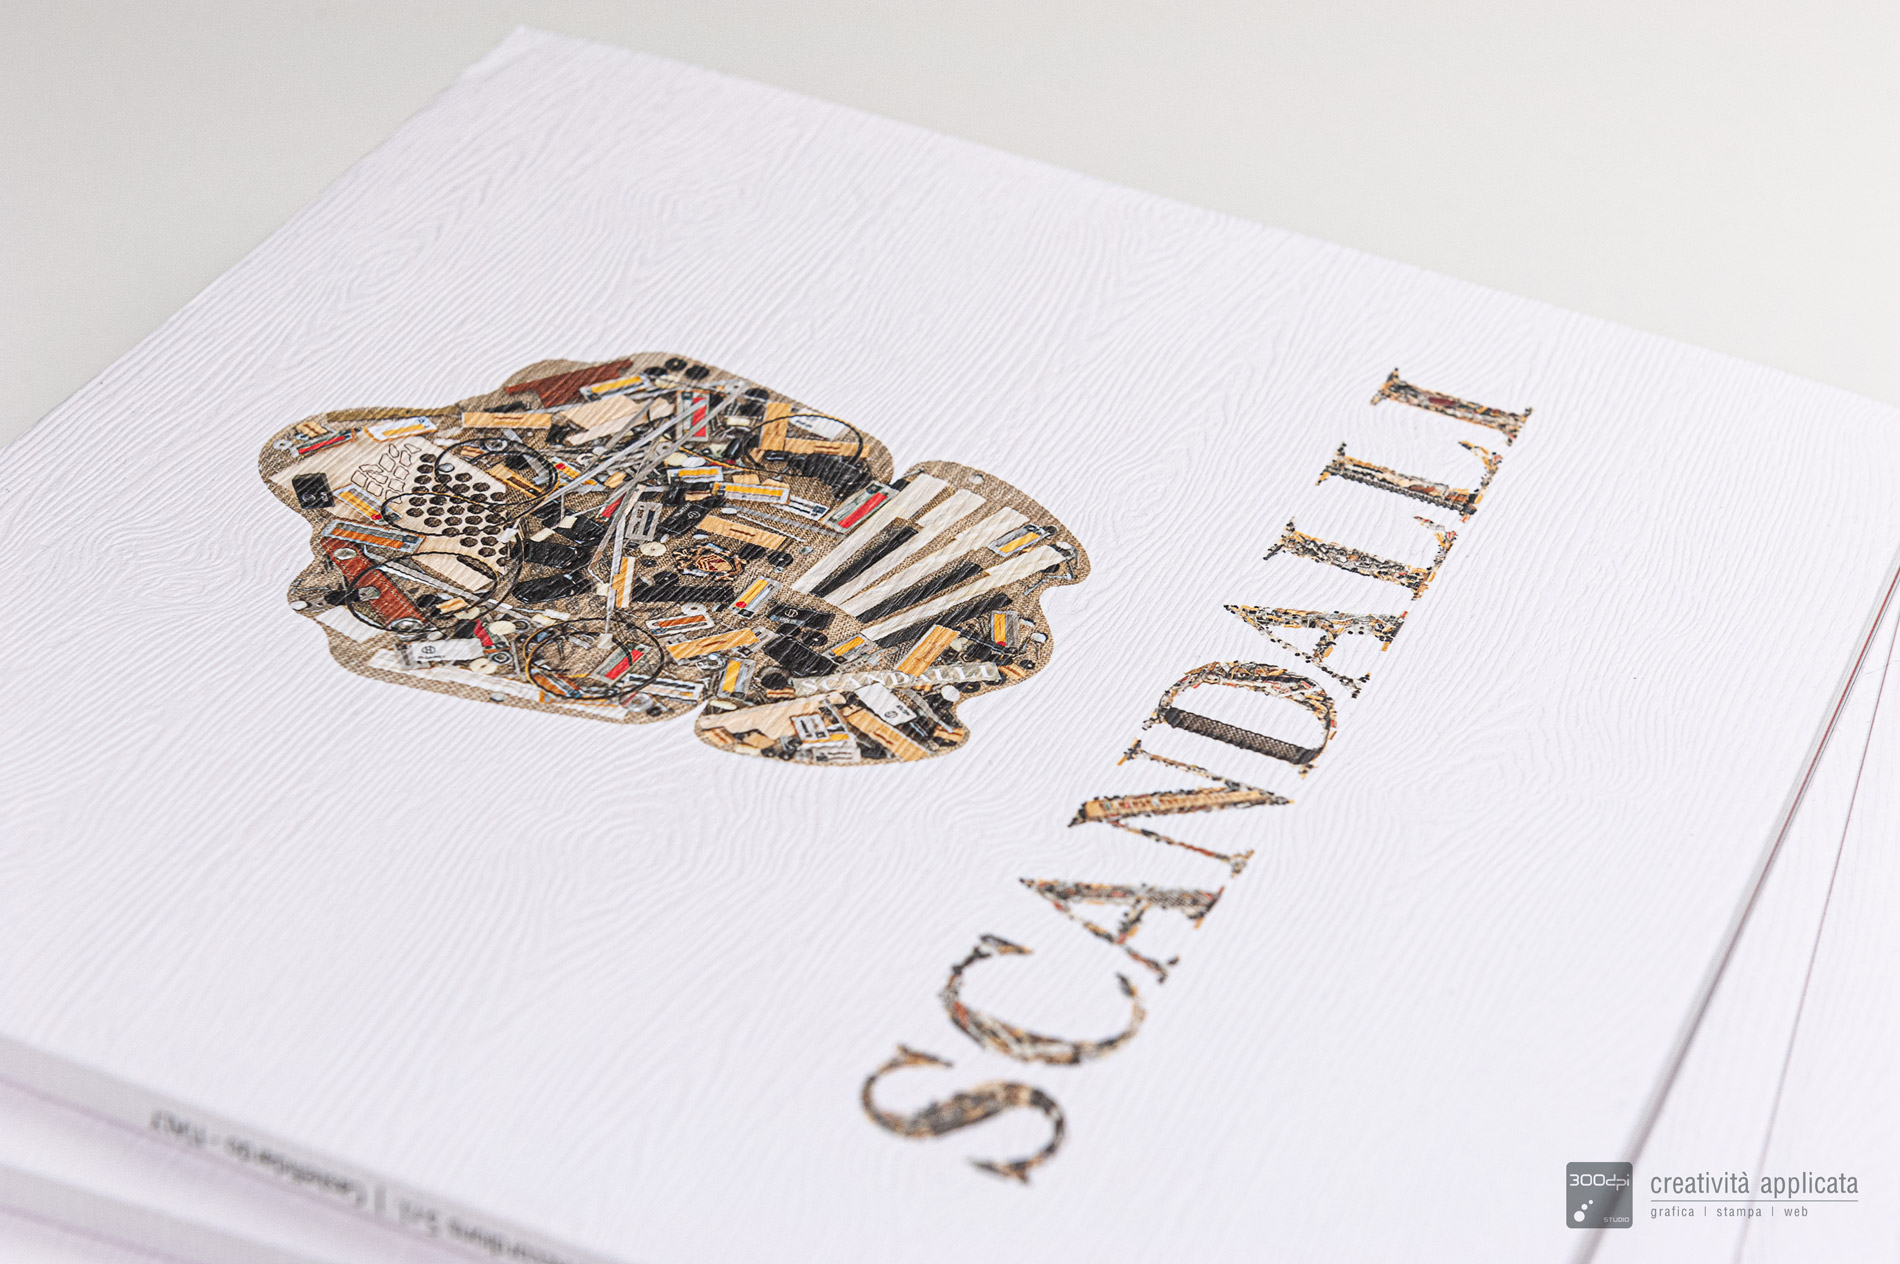 Dettaglio copertina catalogo Scandalli 2022 - 300dpi STUDIO